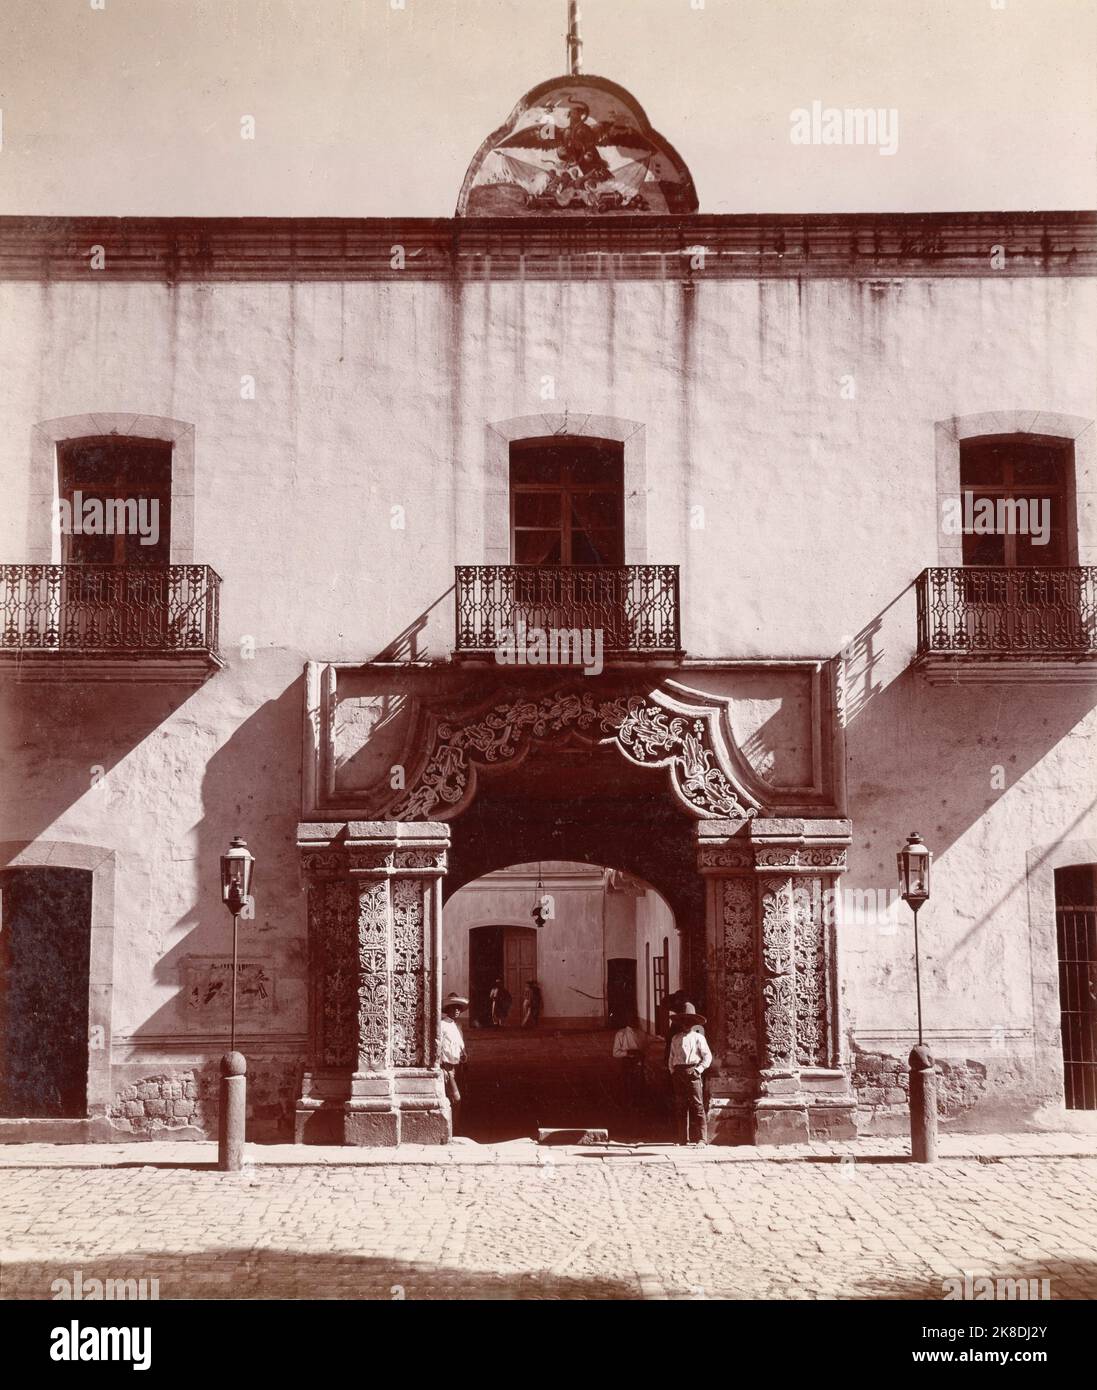 Fotografia vintage in bianco e nero del Palazzo del Governo o del Palacio de Gobierno nella città di Tlaxcala, i fotografi Mayo & Weed, il Vecchio Messico 1898 Foto Stock